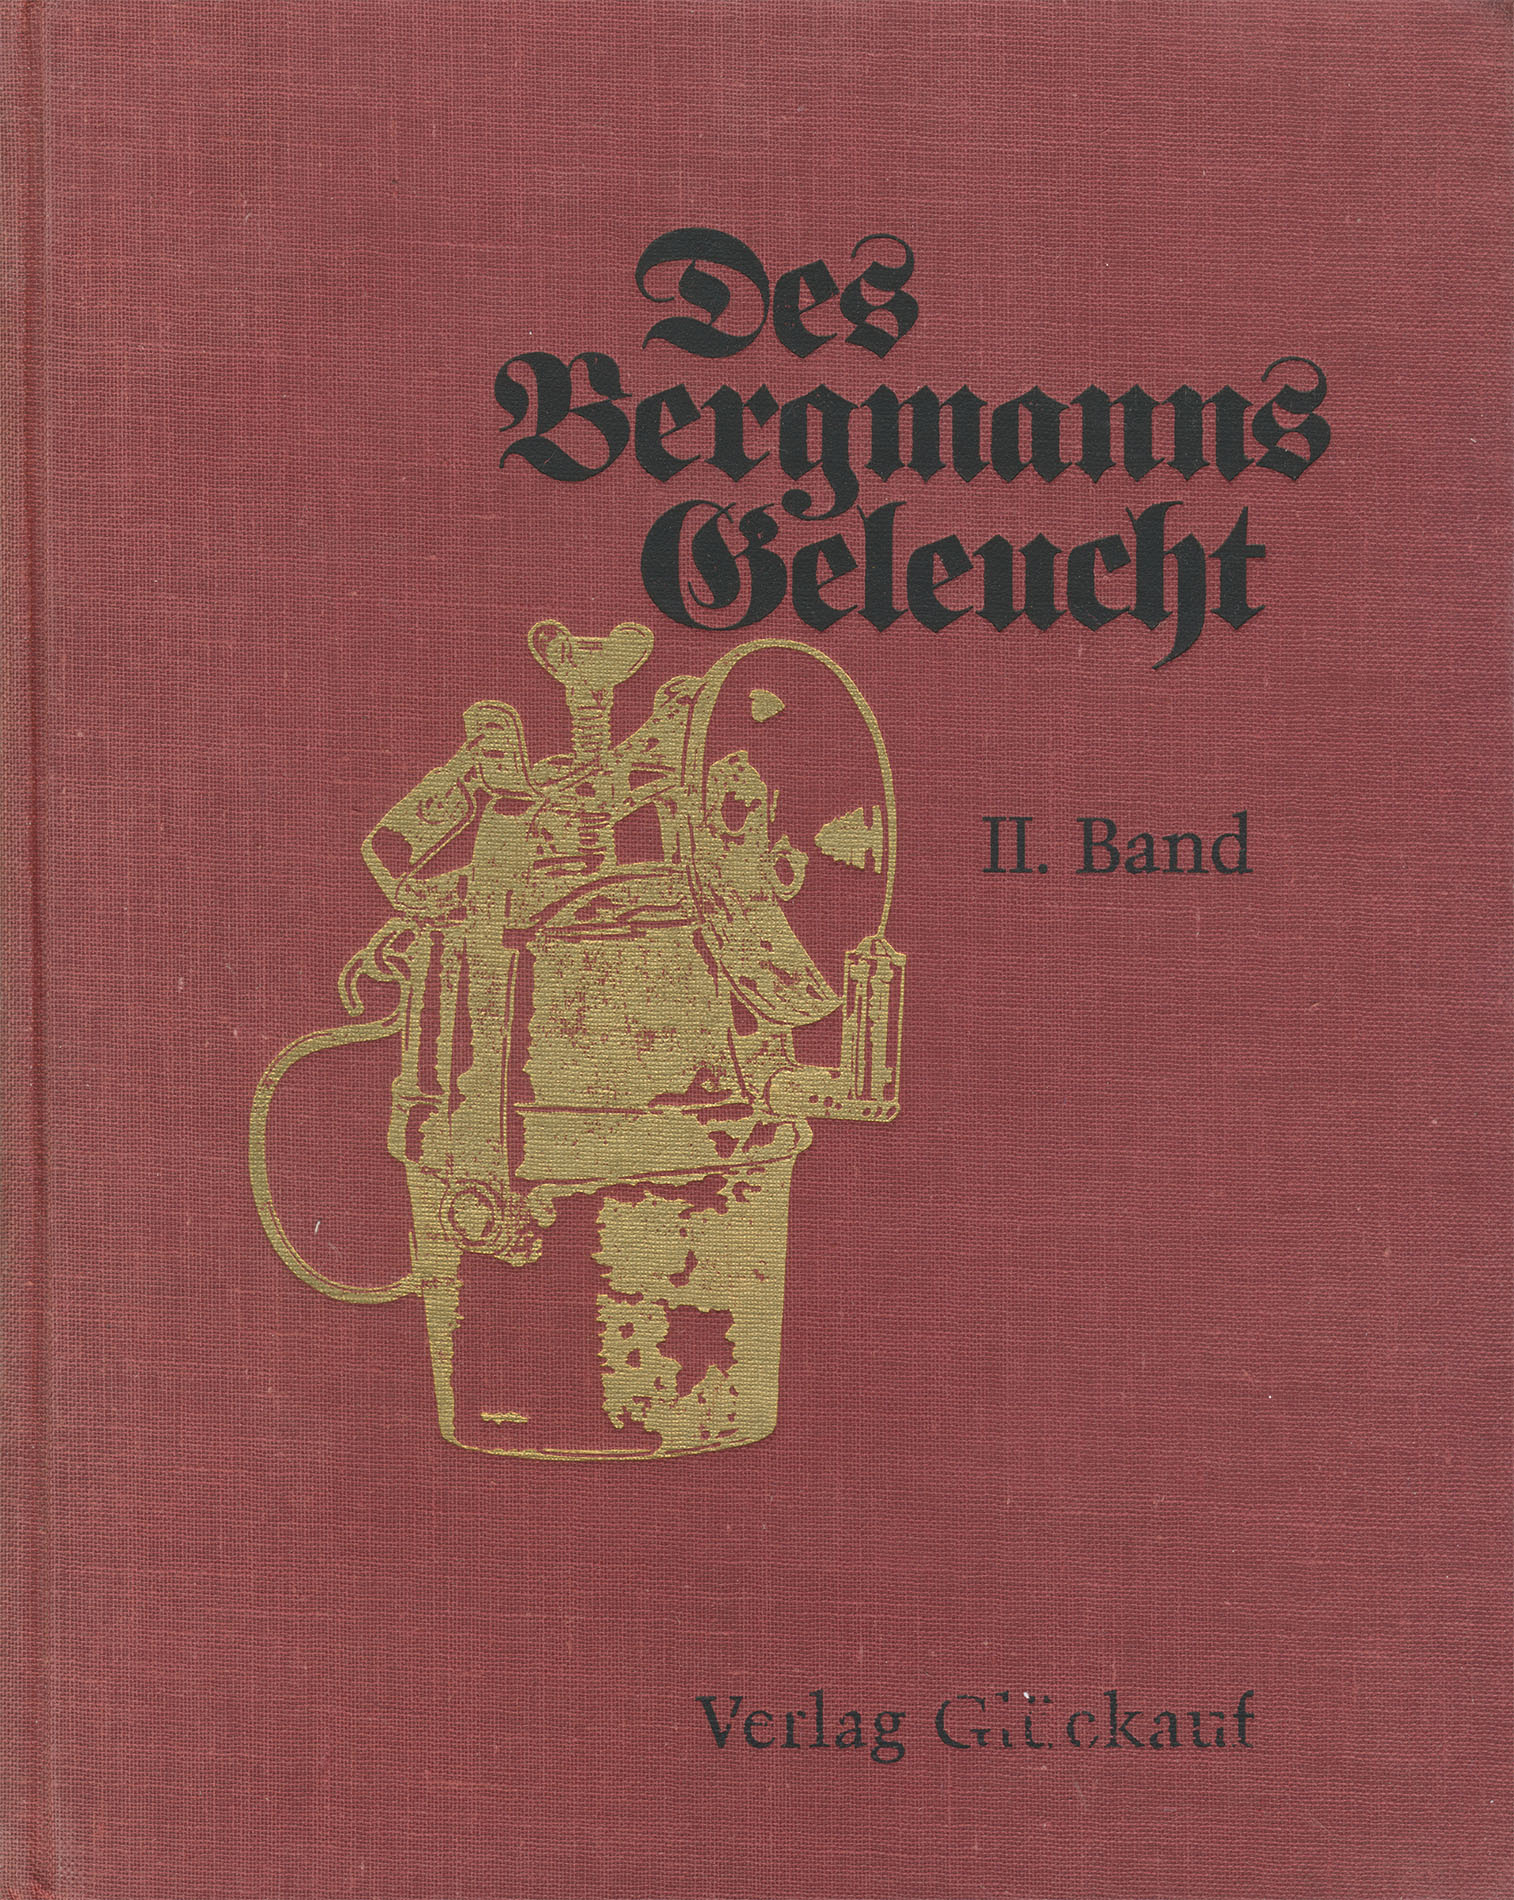 Des Bergmanns Geleucht Band II